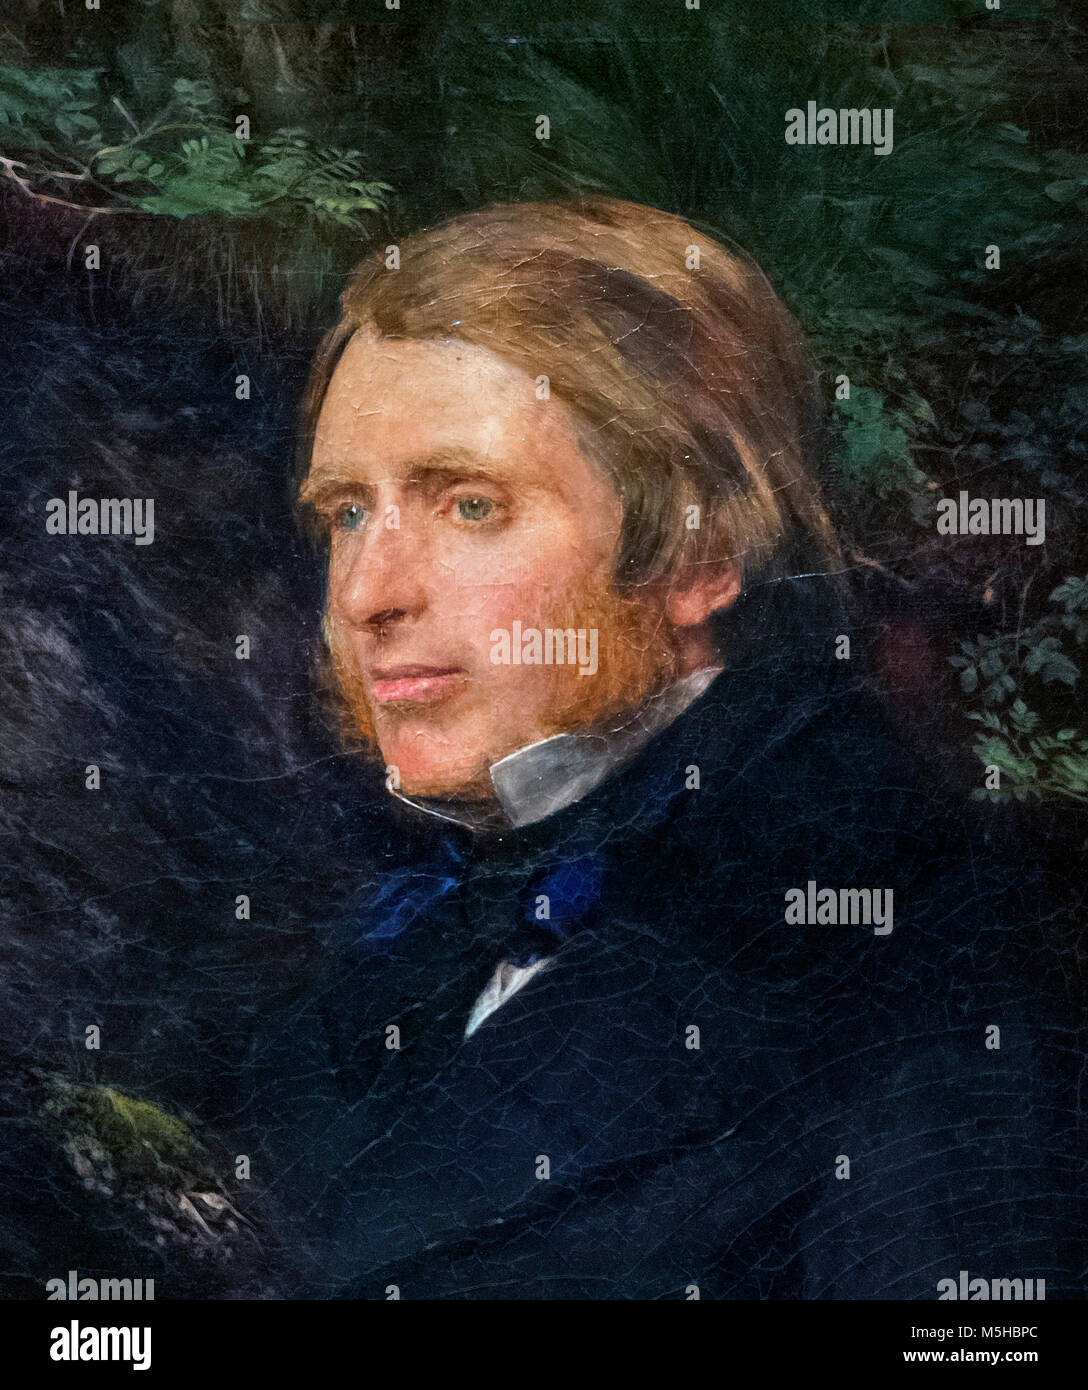 Portrait de la célèbre critique d'art victorien John Ruskin (1819-1900) par John Everett Millais (1829-1896), huile sur toile, 1854. Détail d'une grande peinture, M5HBPD Banque D'Images